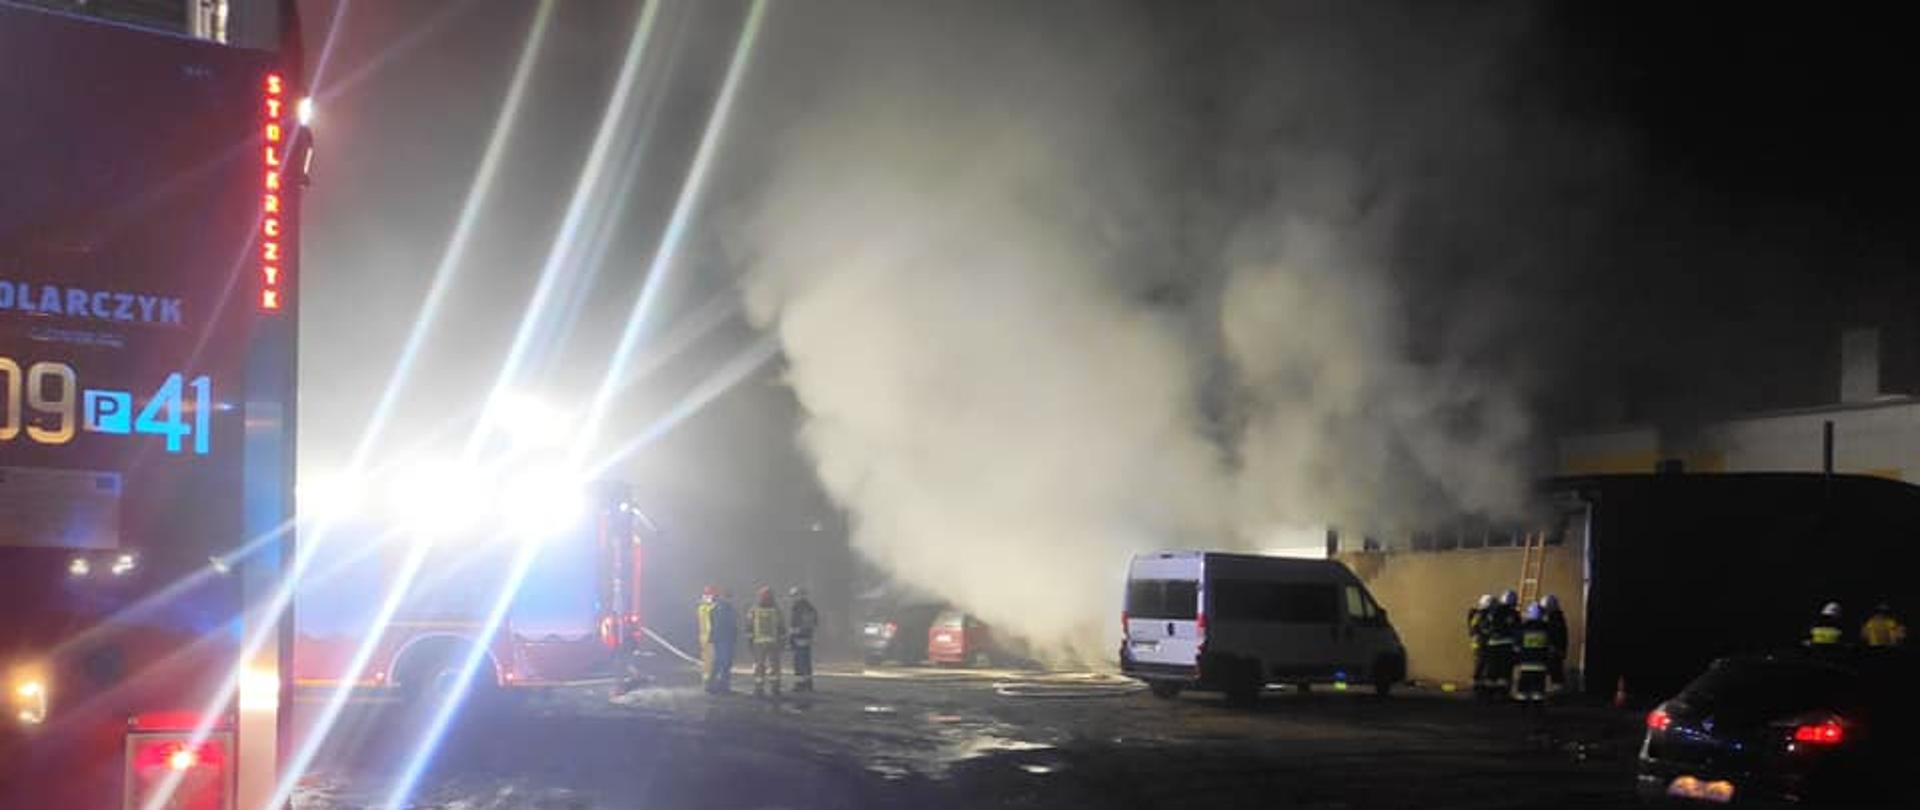 Zdjęcie przedstawia samochód strażacki oraz strażaków gaszących pożar w budynku myjni samochodowej.
W tle budynek i gęsty dym.
